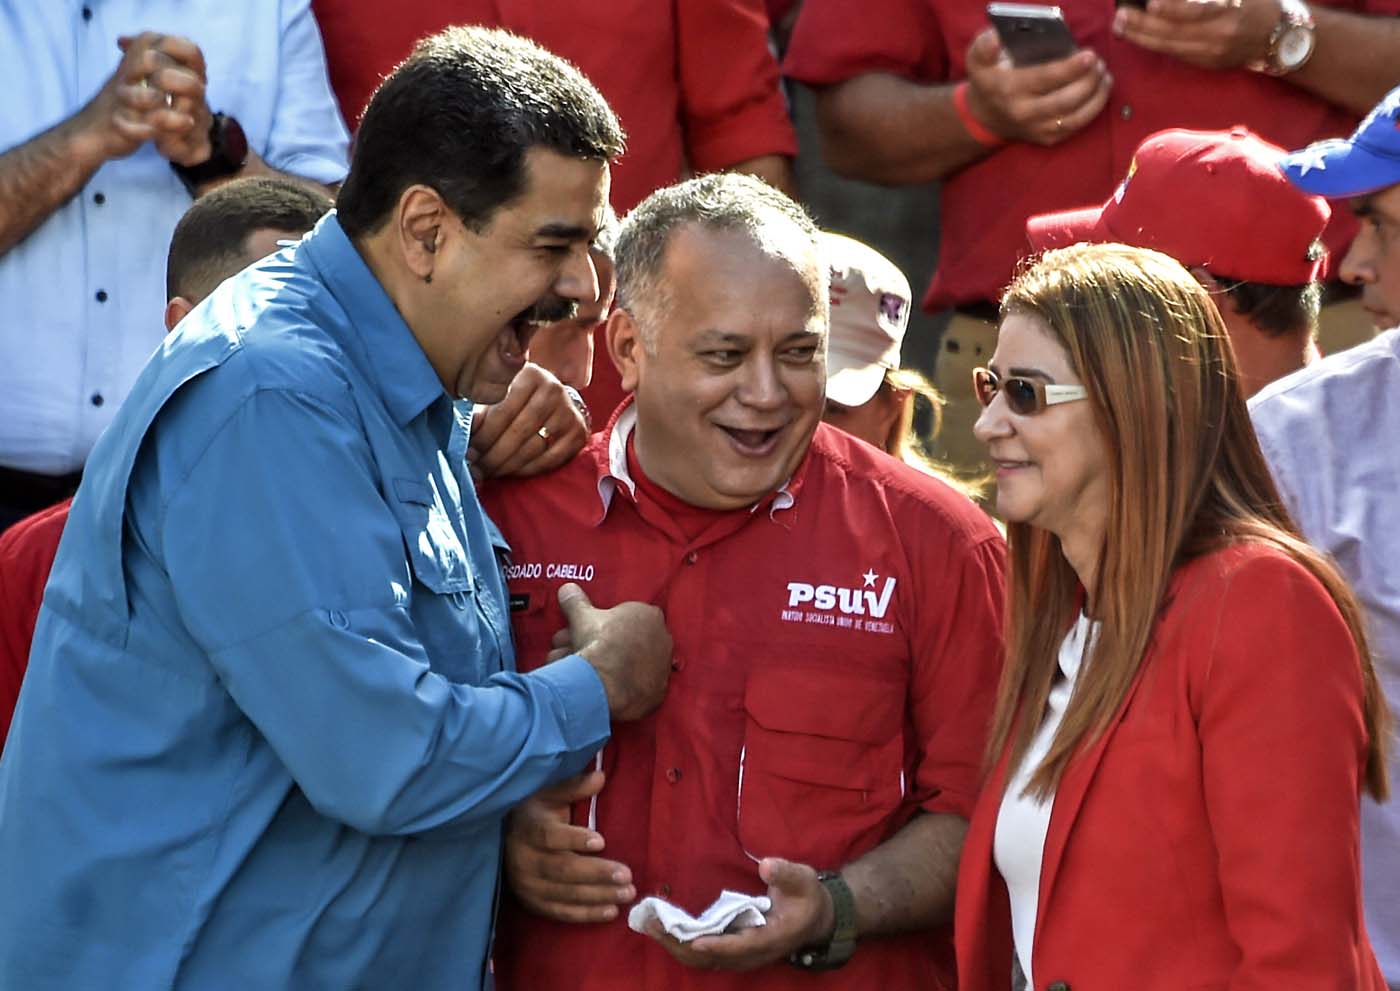 Análisis: ¿Puede Maduro postularse a la reelección en la Presidencia?